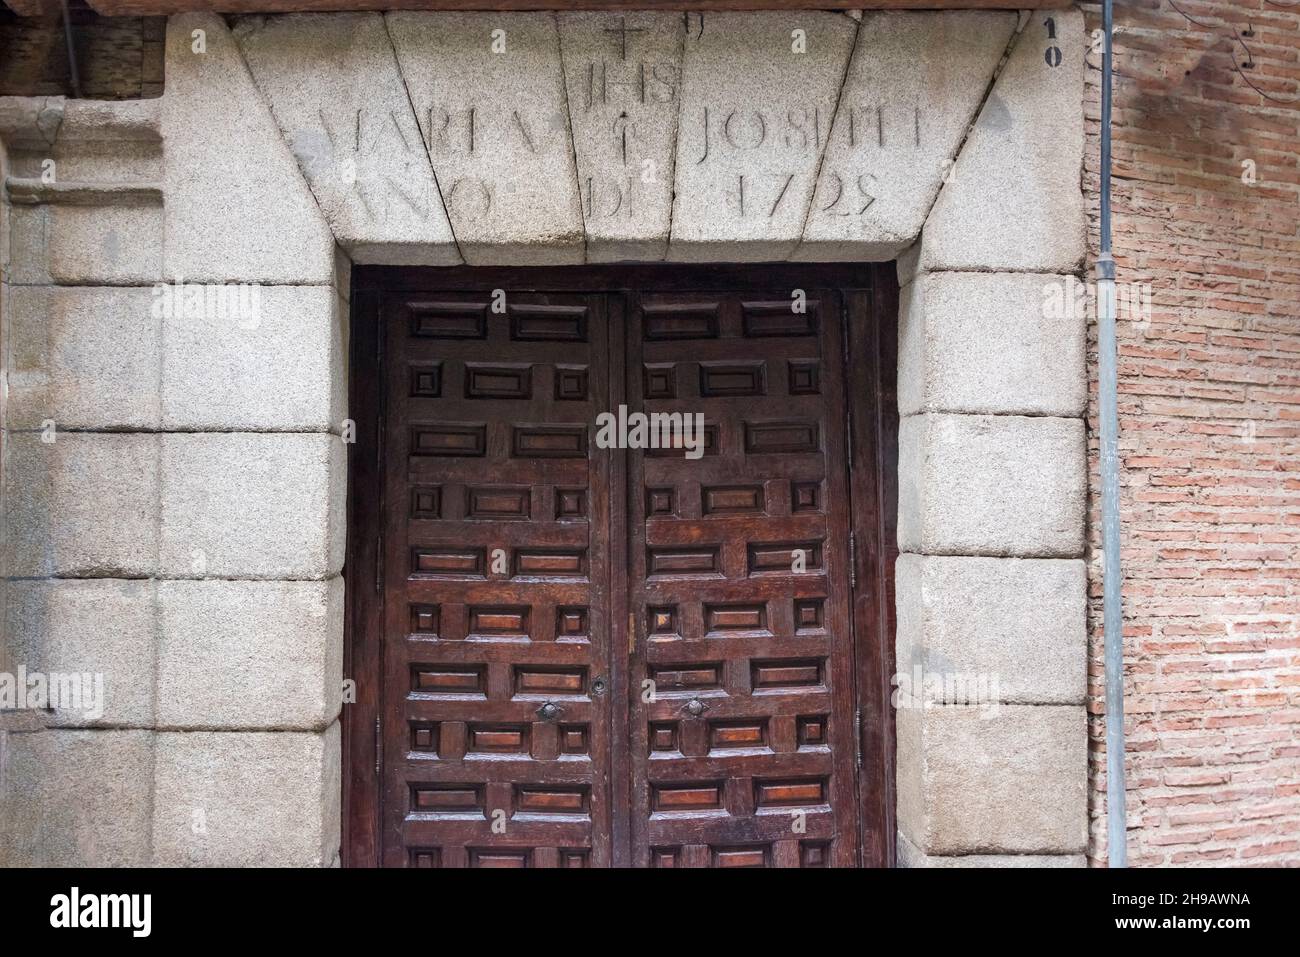 Eingangstür zum Casa Botin, das 1725 gegründet wurde, dem ältesten Restaurant der Welt nach dem Guinness-Buch der Rekorde, Madrid, Spanien Stockfoto